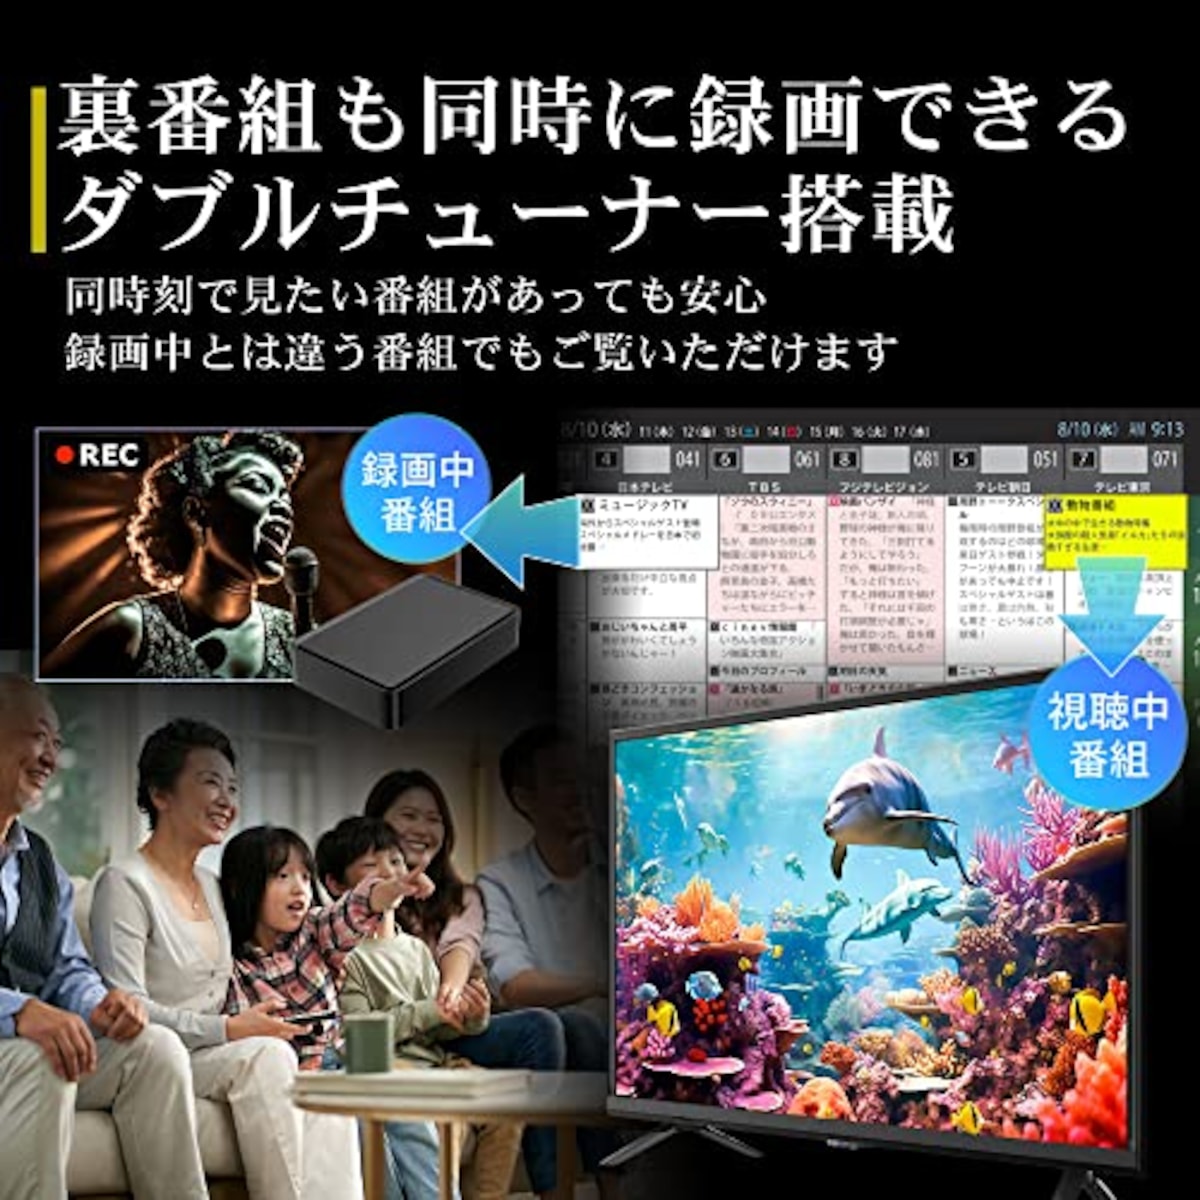  テレビ 32型 ダブルチューナー 裏番組録画 ハイビジョン 東芝ボード内蔵 外付けHDD対応 録画機能 日本メーカー 2022年モデル 壁掛けにも対応 irie アイリー FFF-TV32WBK2画像9 